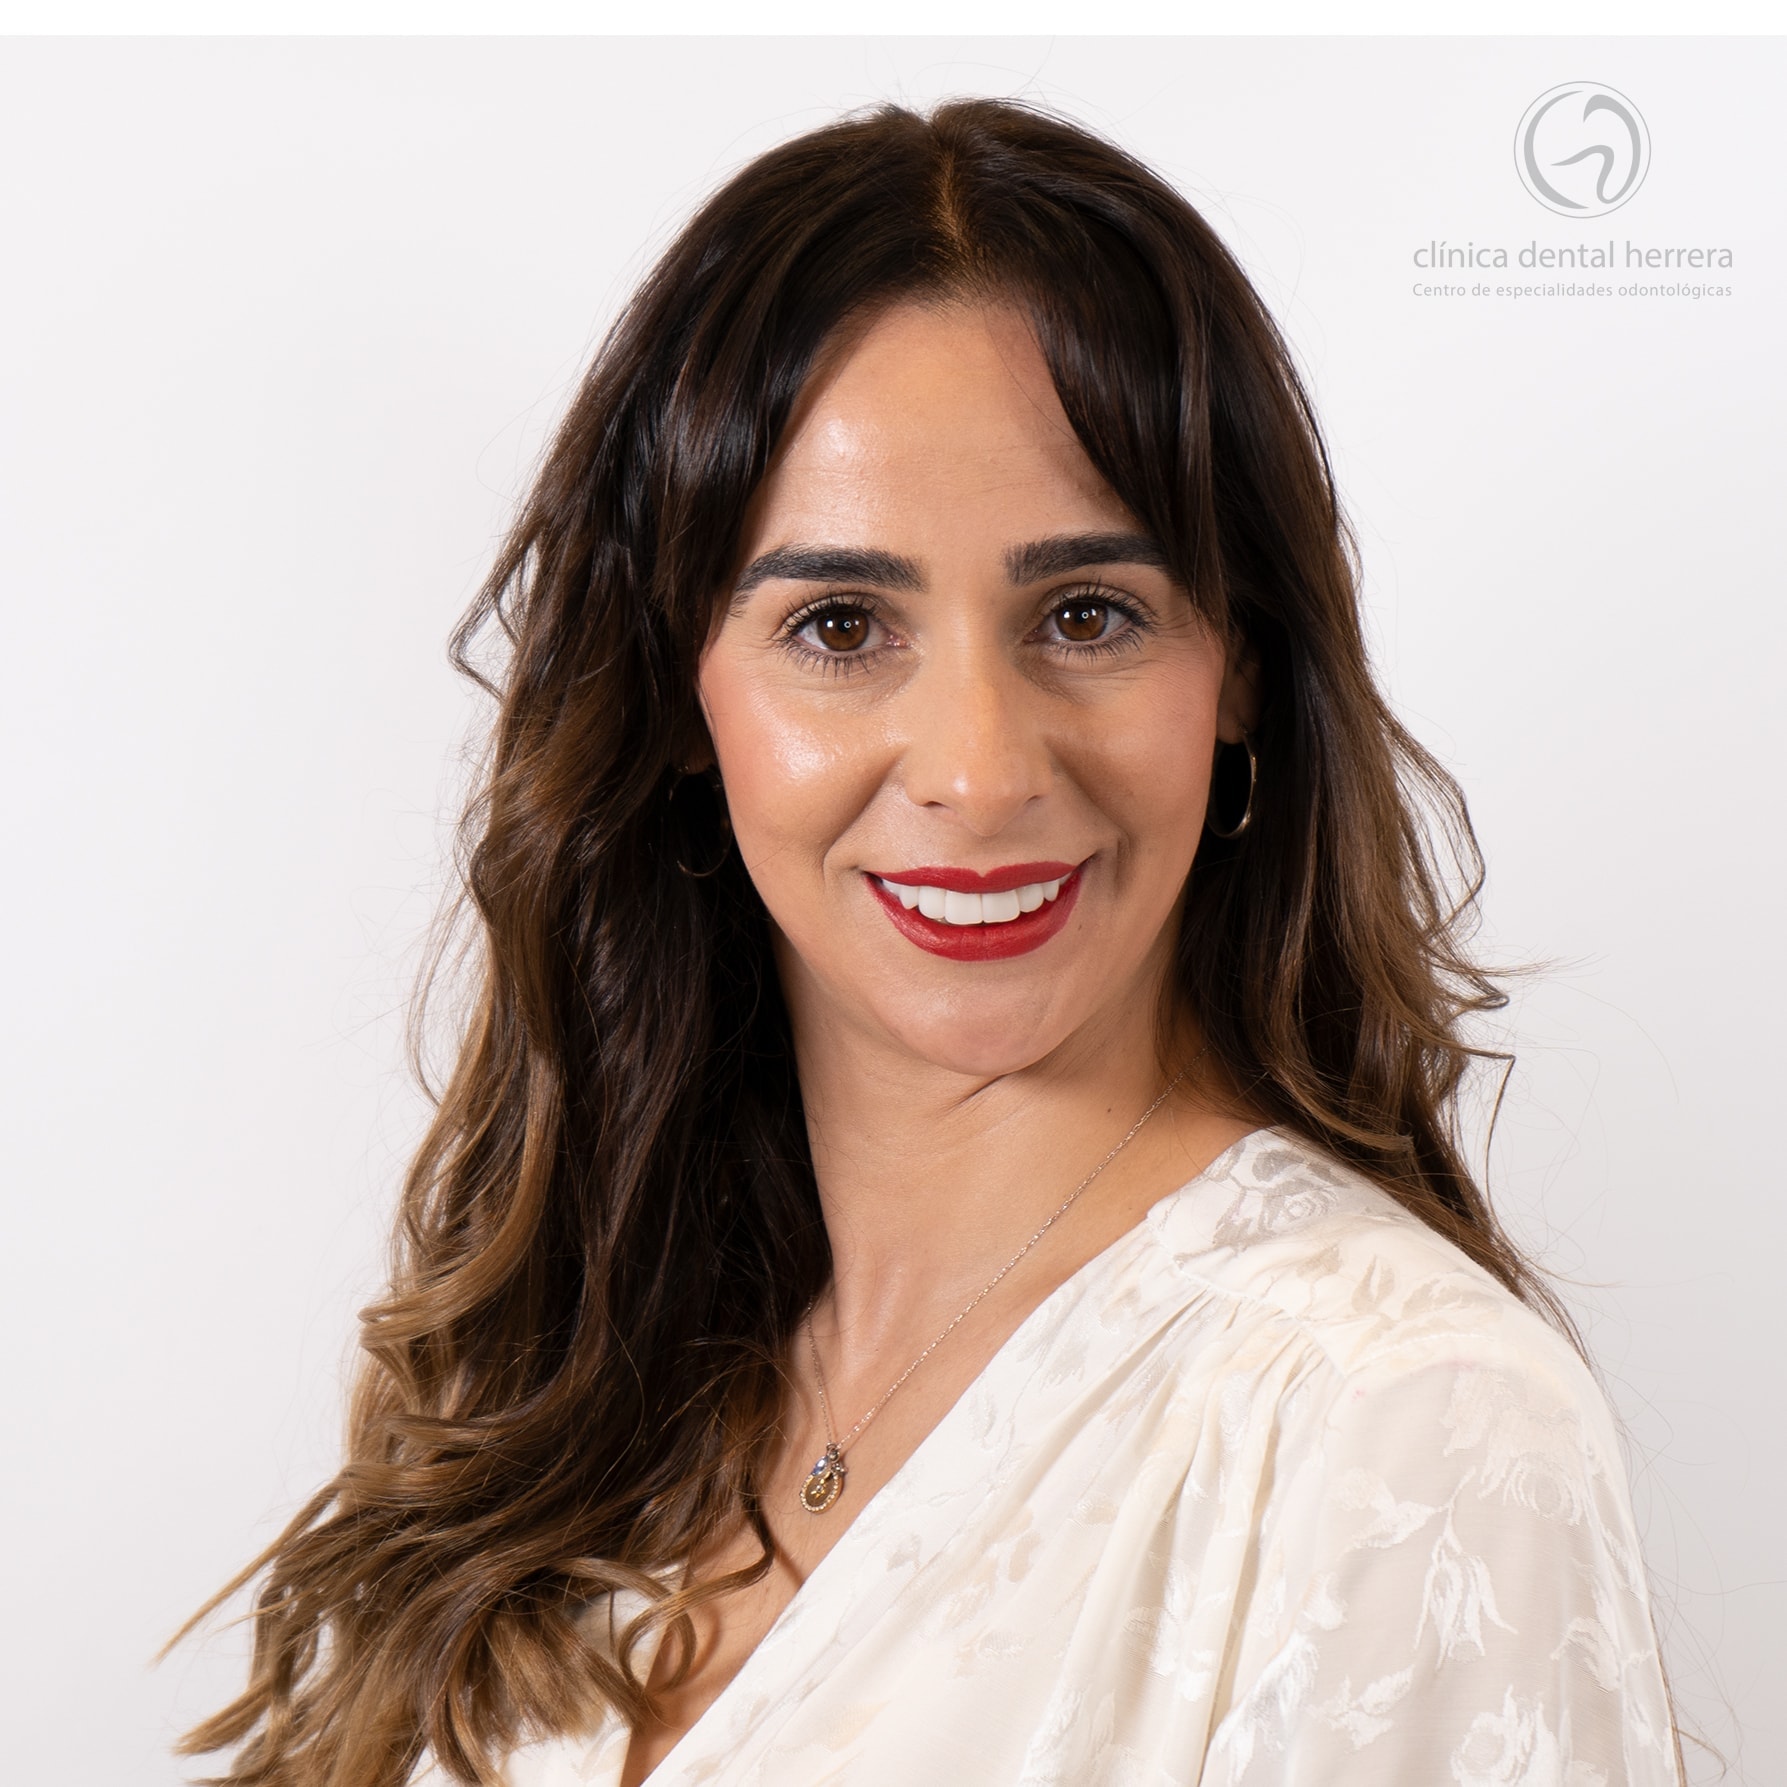 María Molina. Orthodontics, Implants and Dental Veneers 43